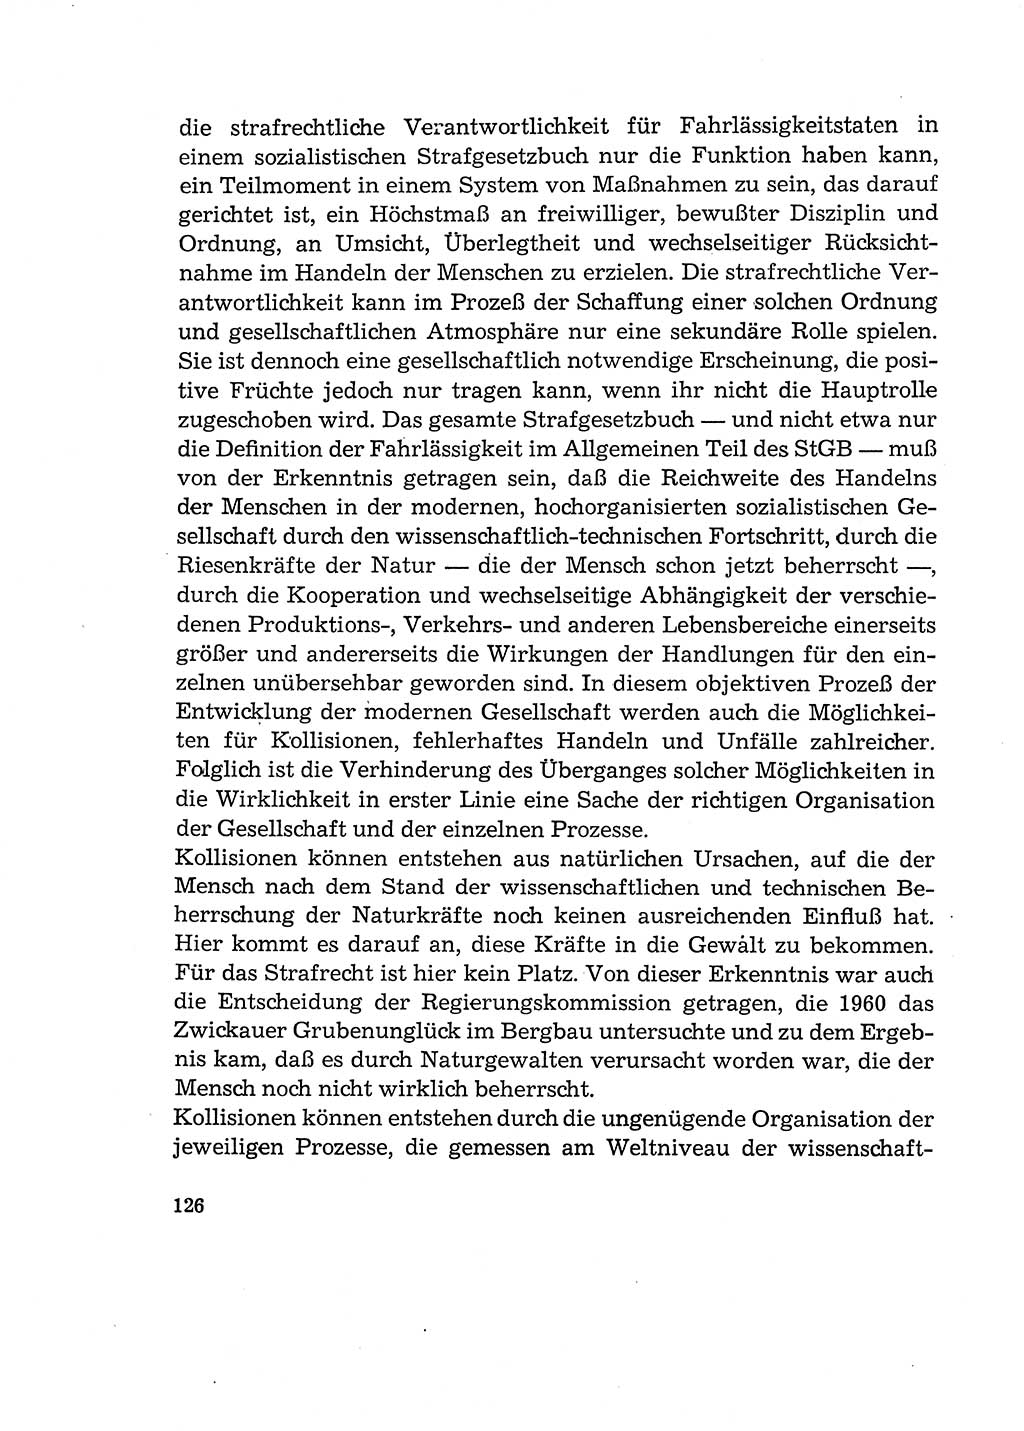 Verantwortung und Schuld im neuen Strafgesetzbuch (StGB) [Deutsche Demokratische Republik (DDR)] 1964, Seite 126 (Verantw. Sch. StGB DDR 1964, S. 126)